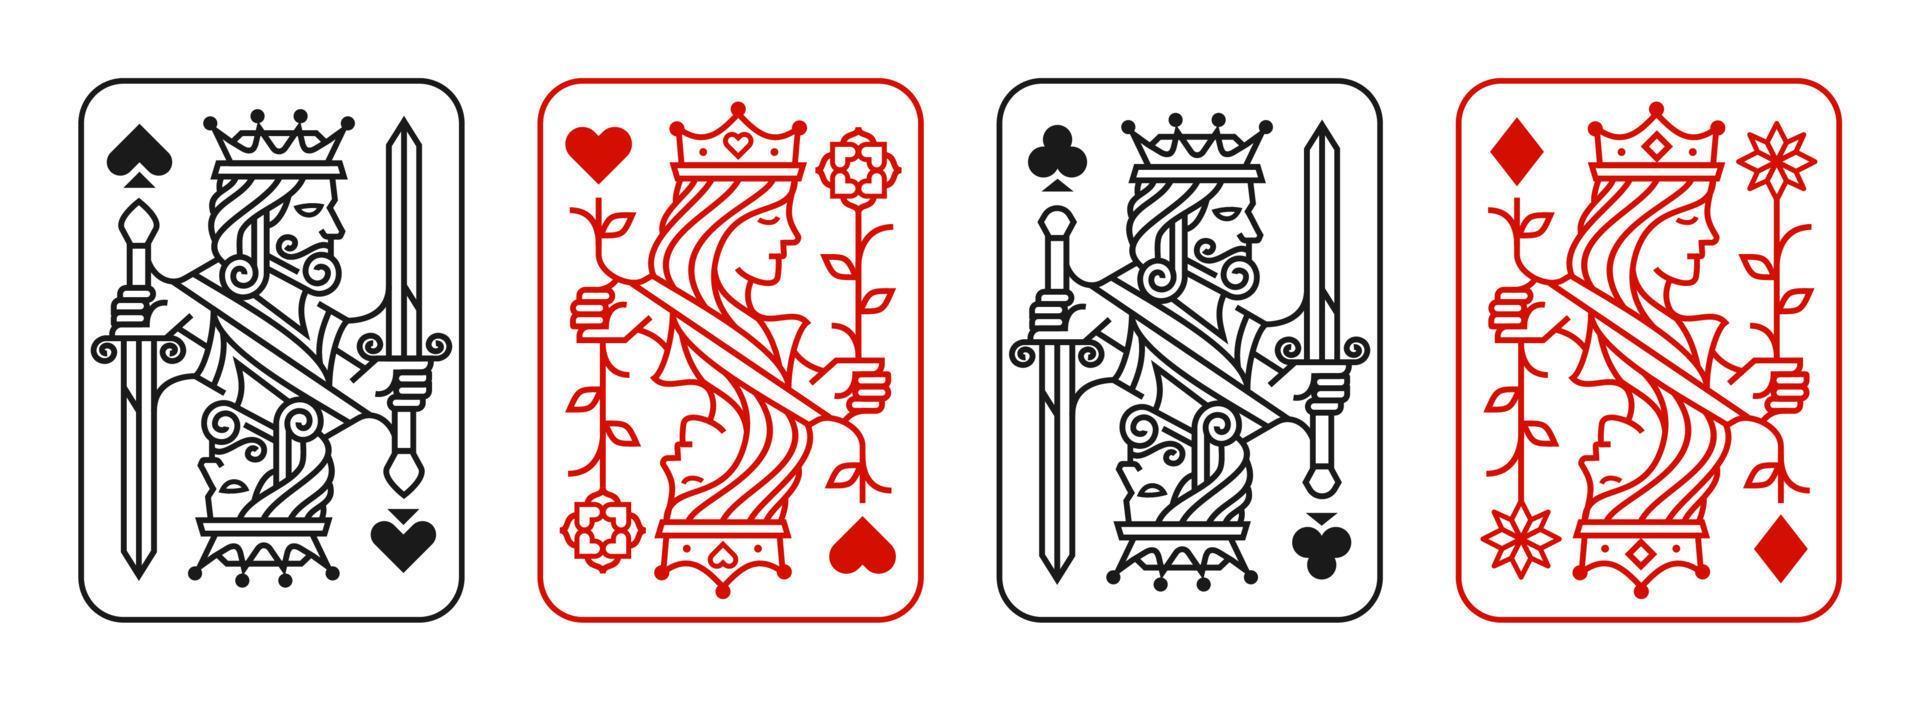 juego de ilustración vectorial de naipes rey y reina de corazones, pala, diamante y club, colección de diseño de cartas reales vector